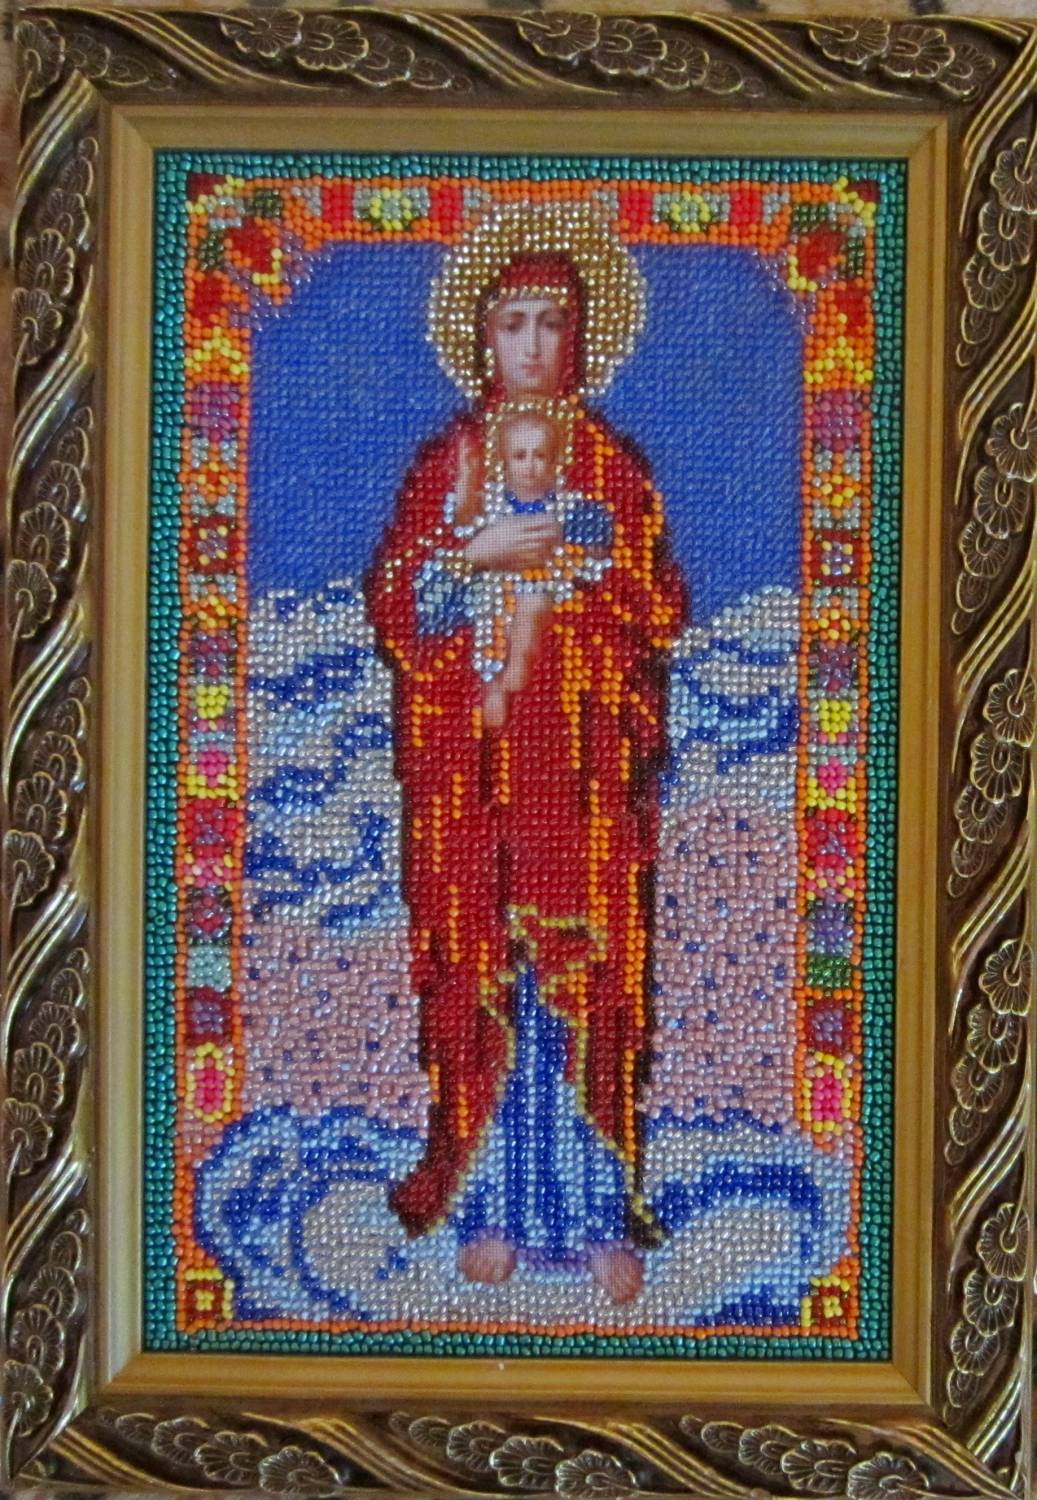 Заказать (купить) икону "Валаамская икона Божьей Матери"